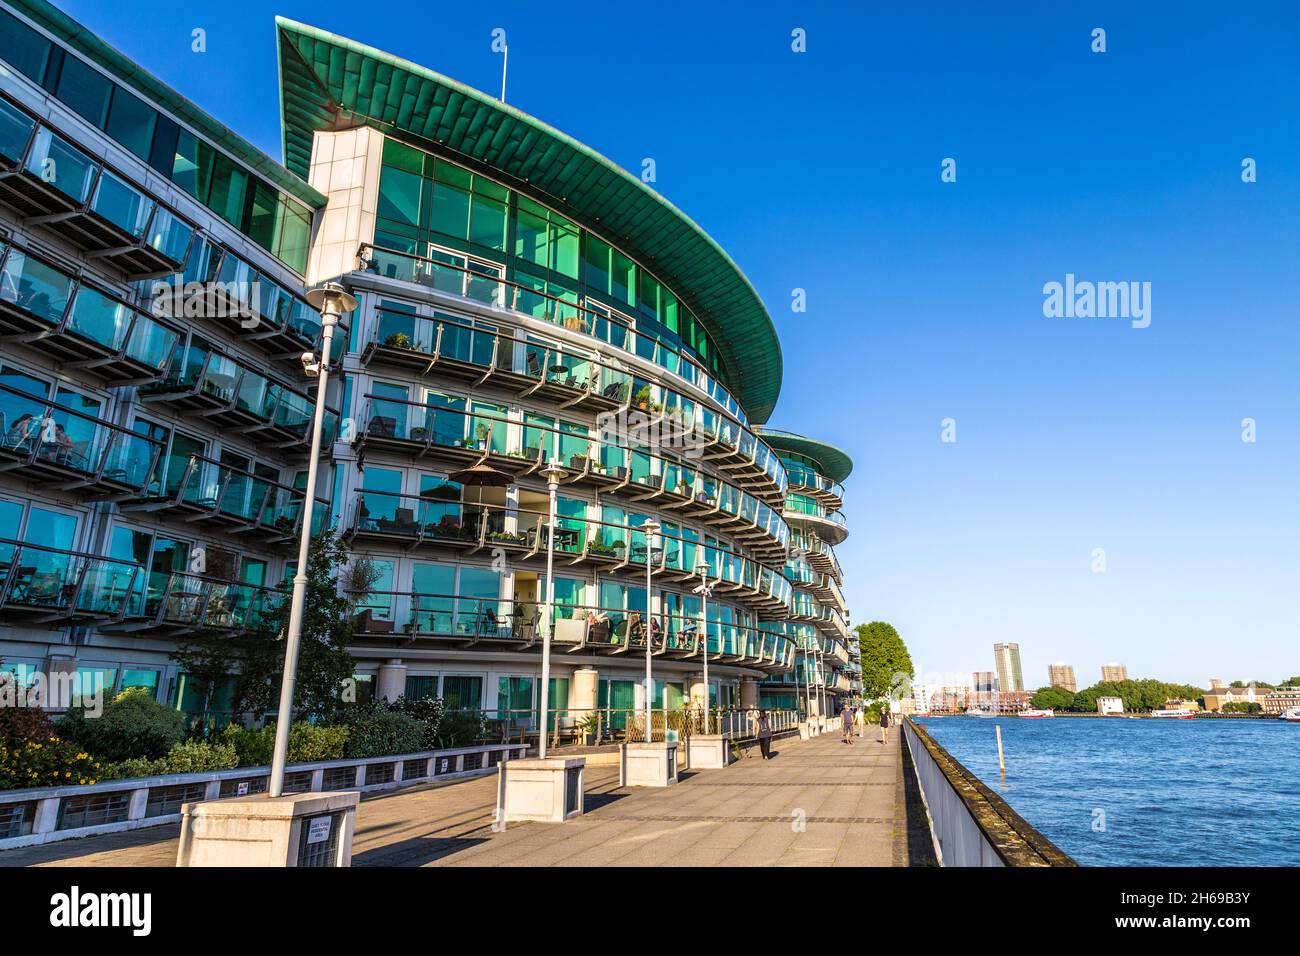 Bâtiments de Cinnabar Wharf à Wapping, Londres, Royaume-Uni Banque D'Images